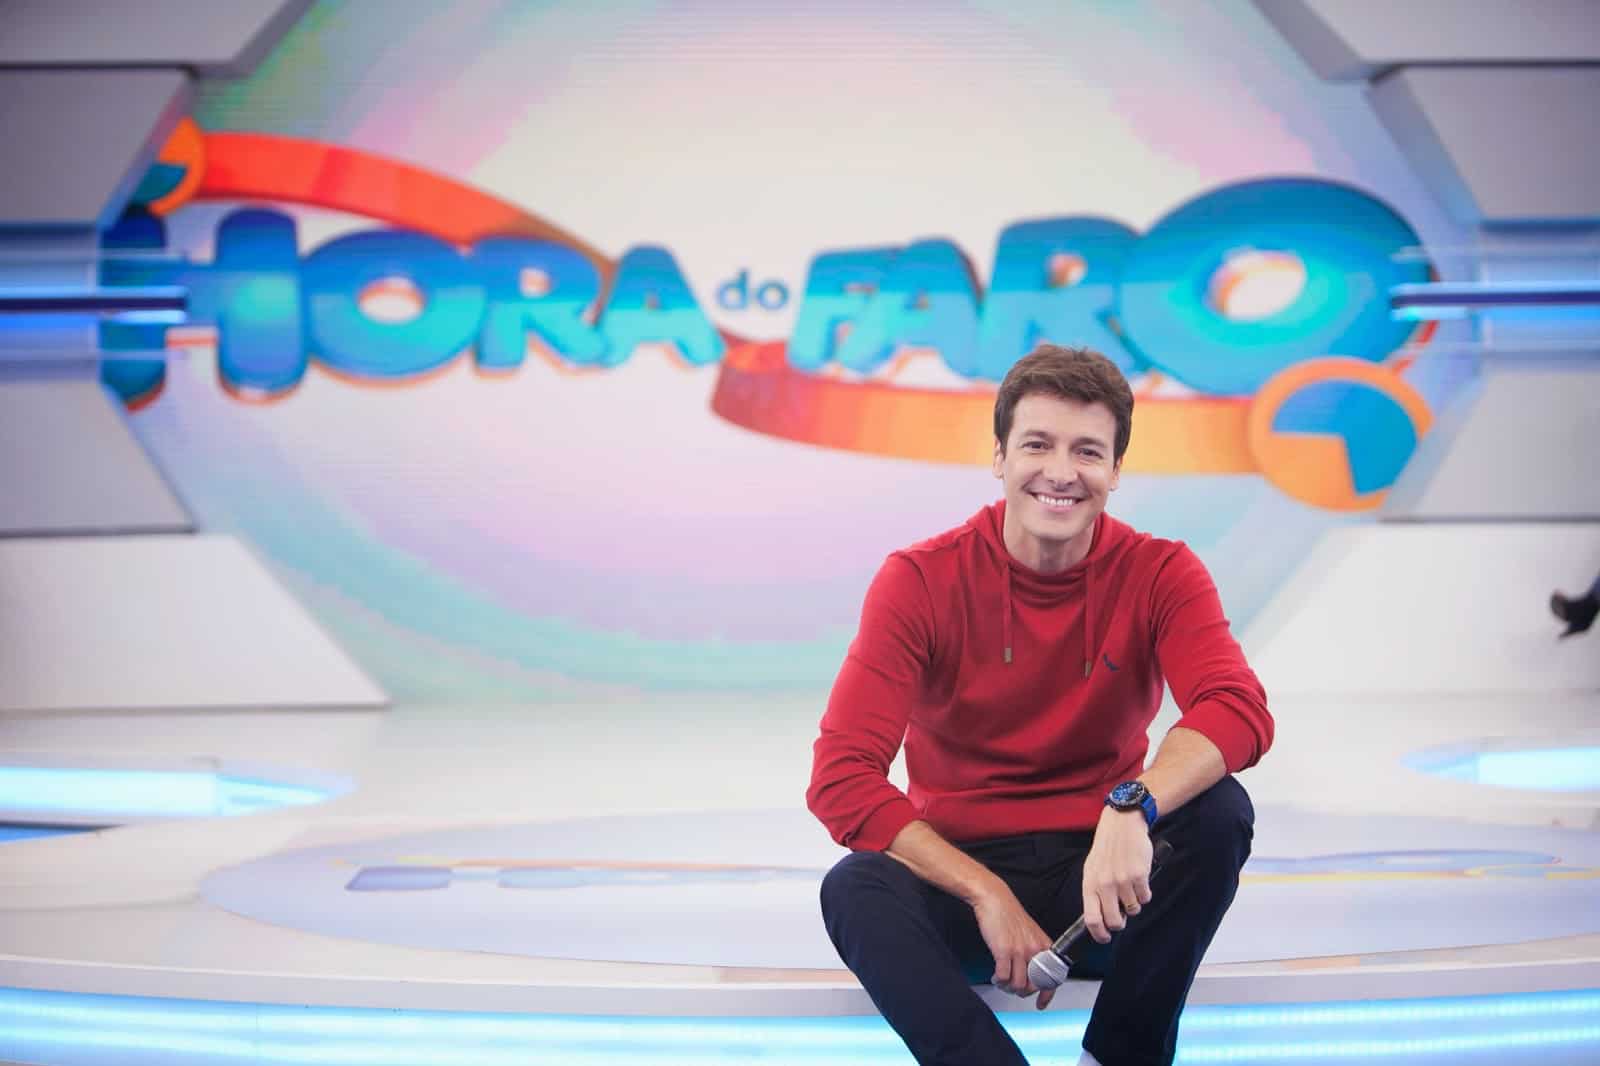 Audiência da TV: “Hora do Faro” é líder em Goiânia e segura a segunda colocação pelo Brasil